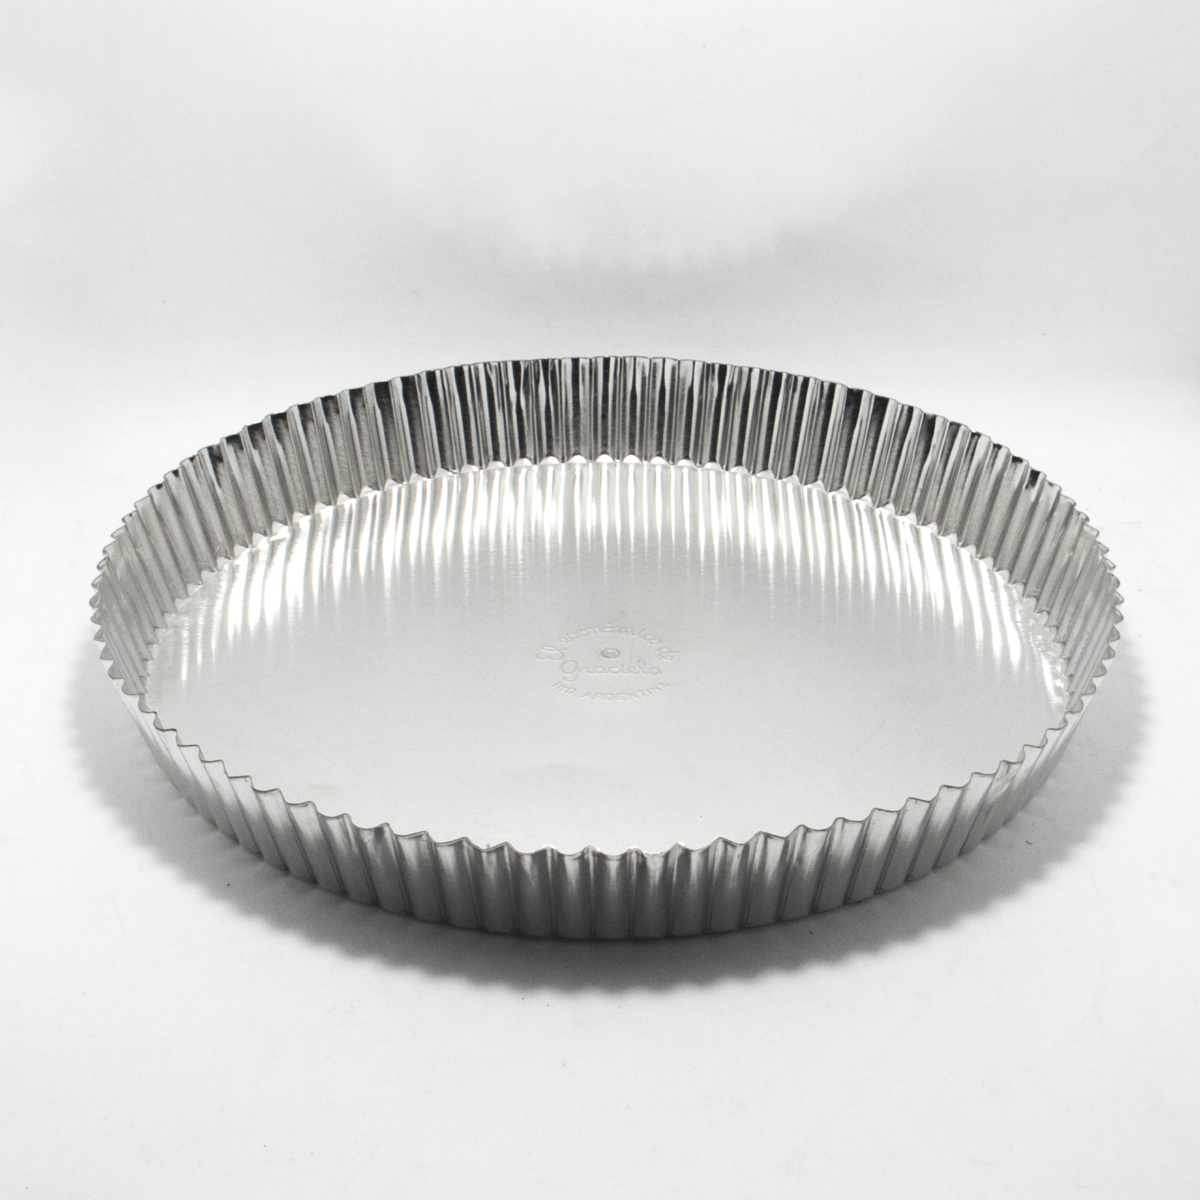 Molde Graciela - aluminio - 30cm